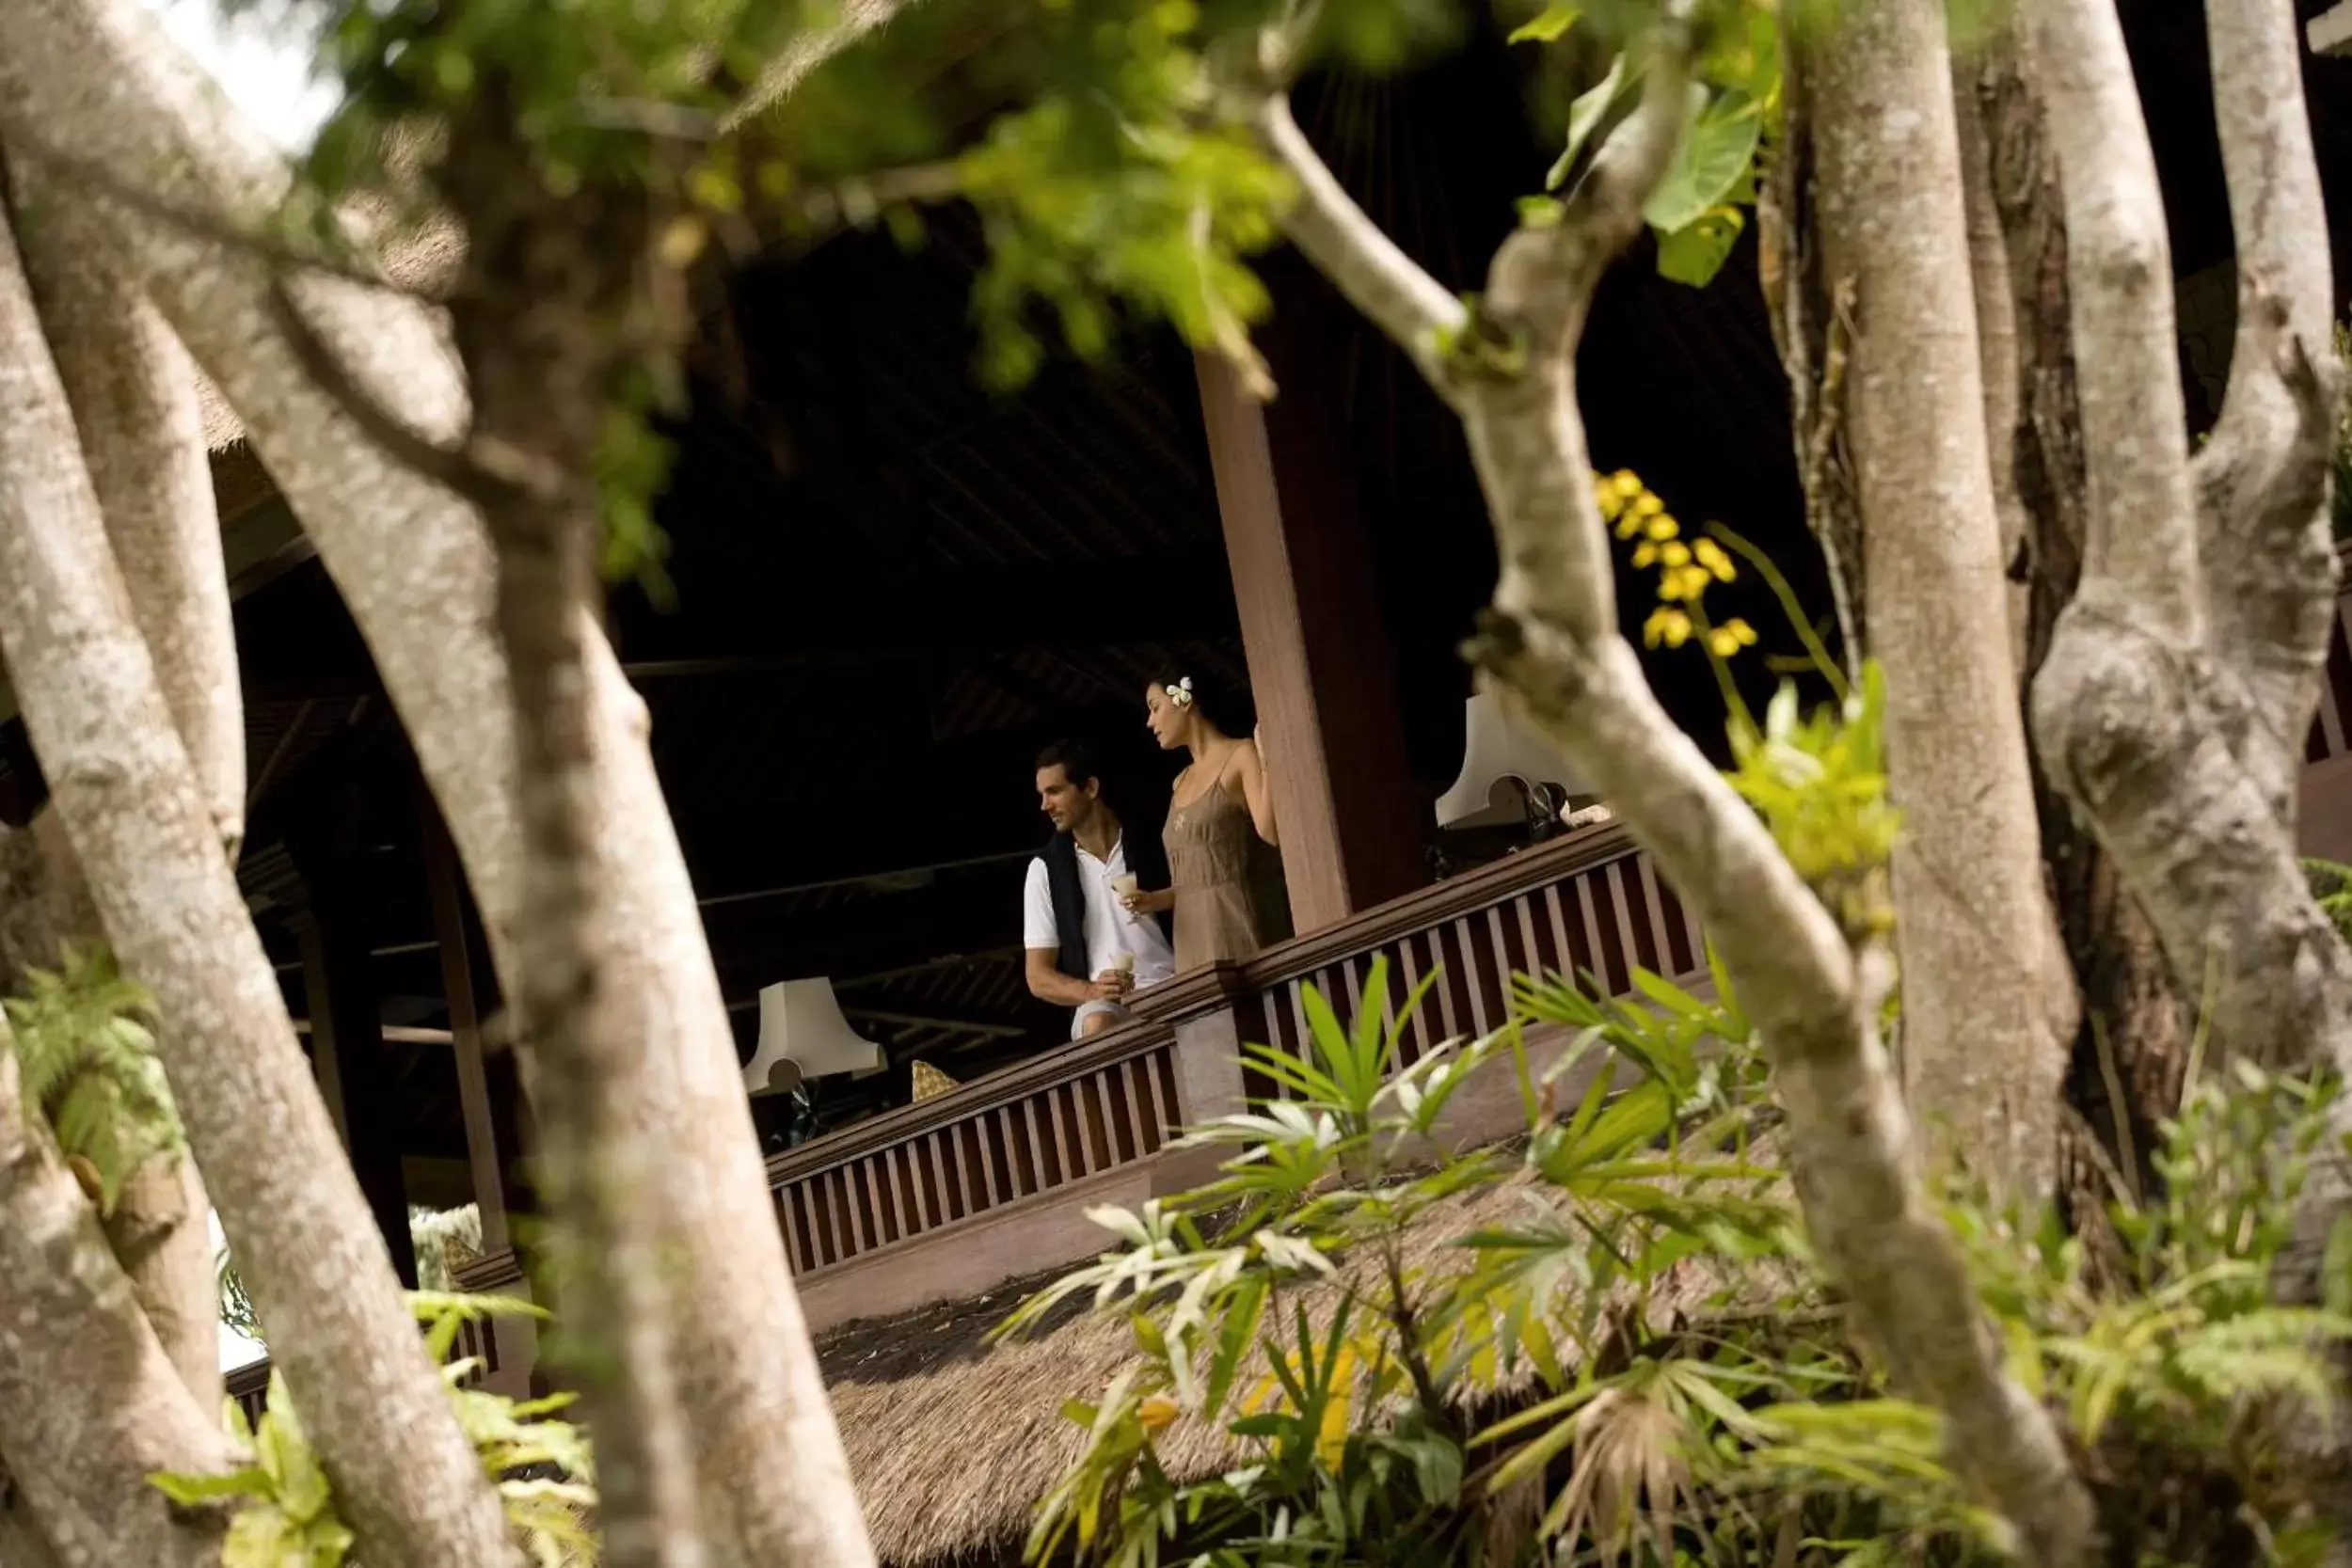 Balcony/Terrace in Pita Maha Resort & Spa